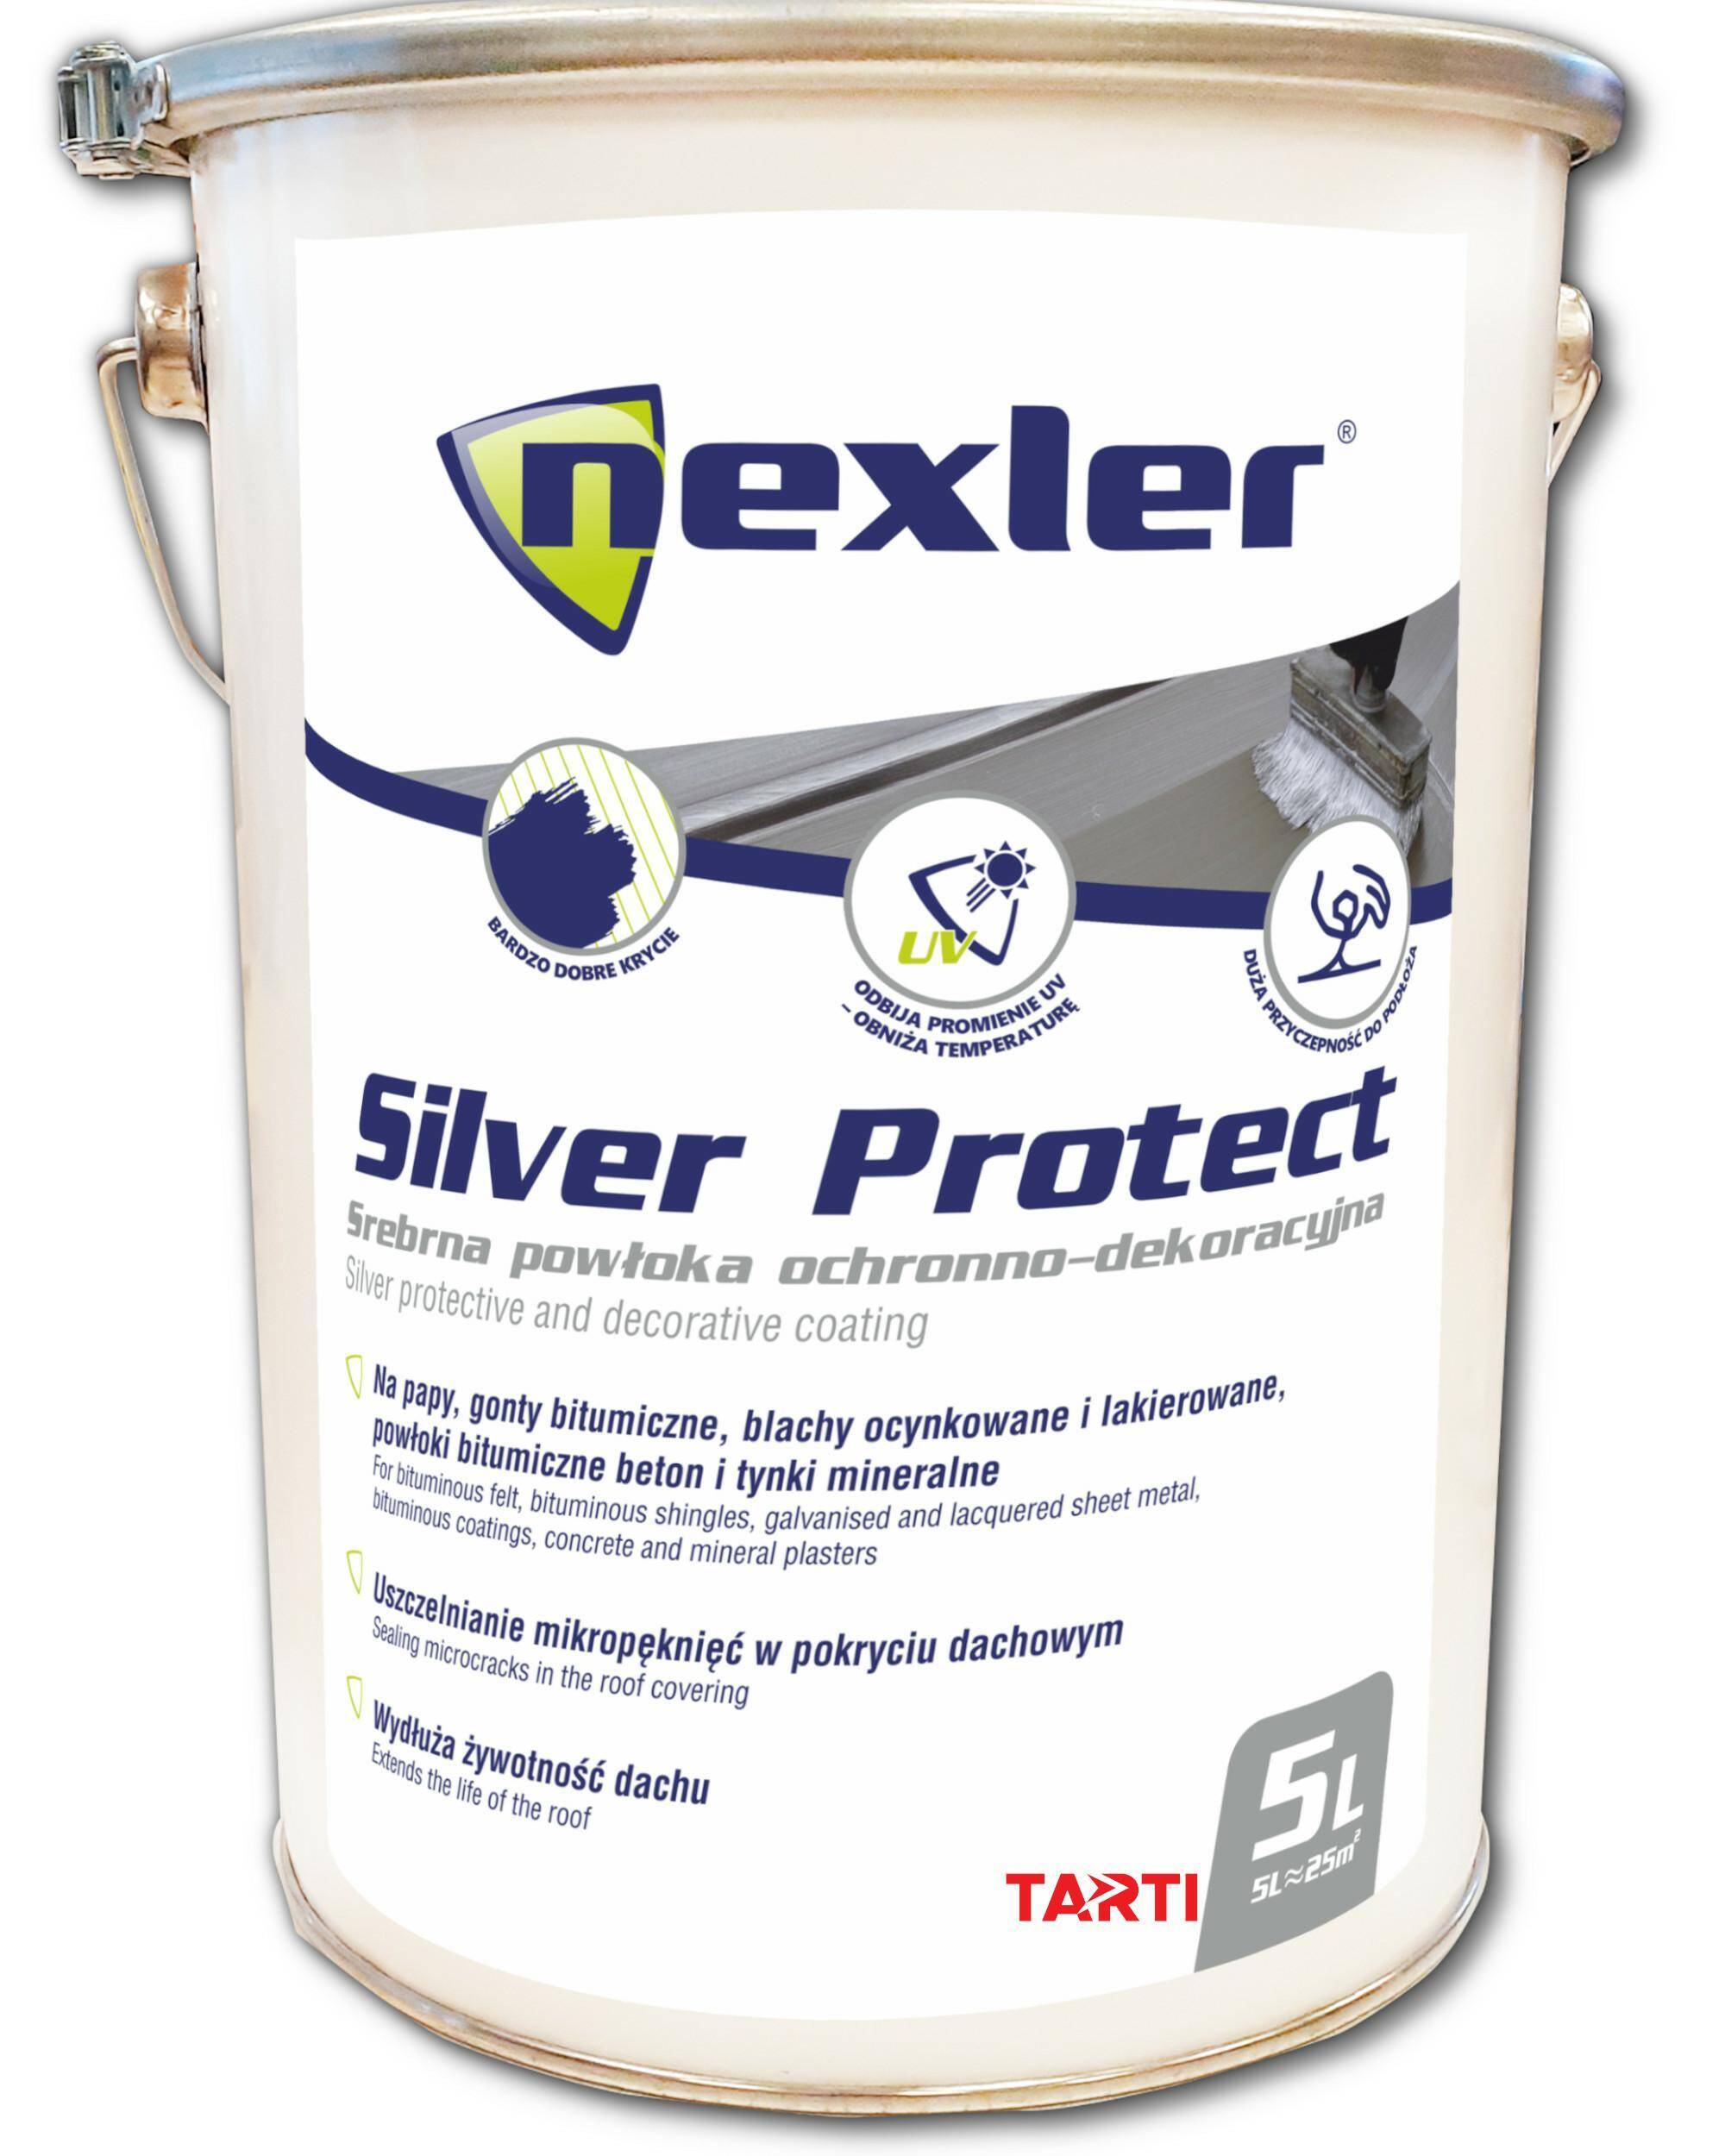 NEXLER Silver Protect 5L powłoka